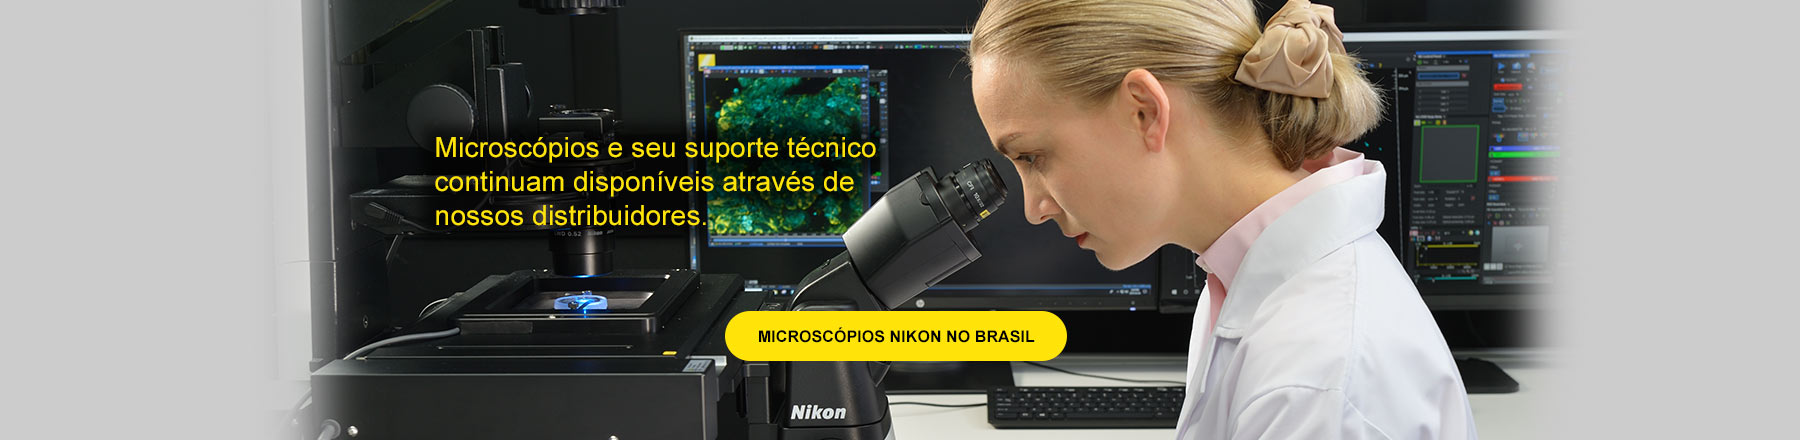 Microscópios e seu suporte técnico continuam disponíveis através de nossos distribuidores